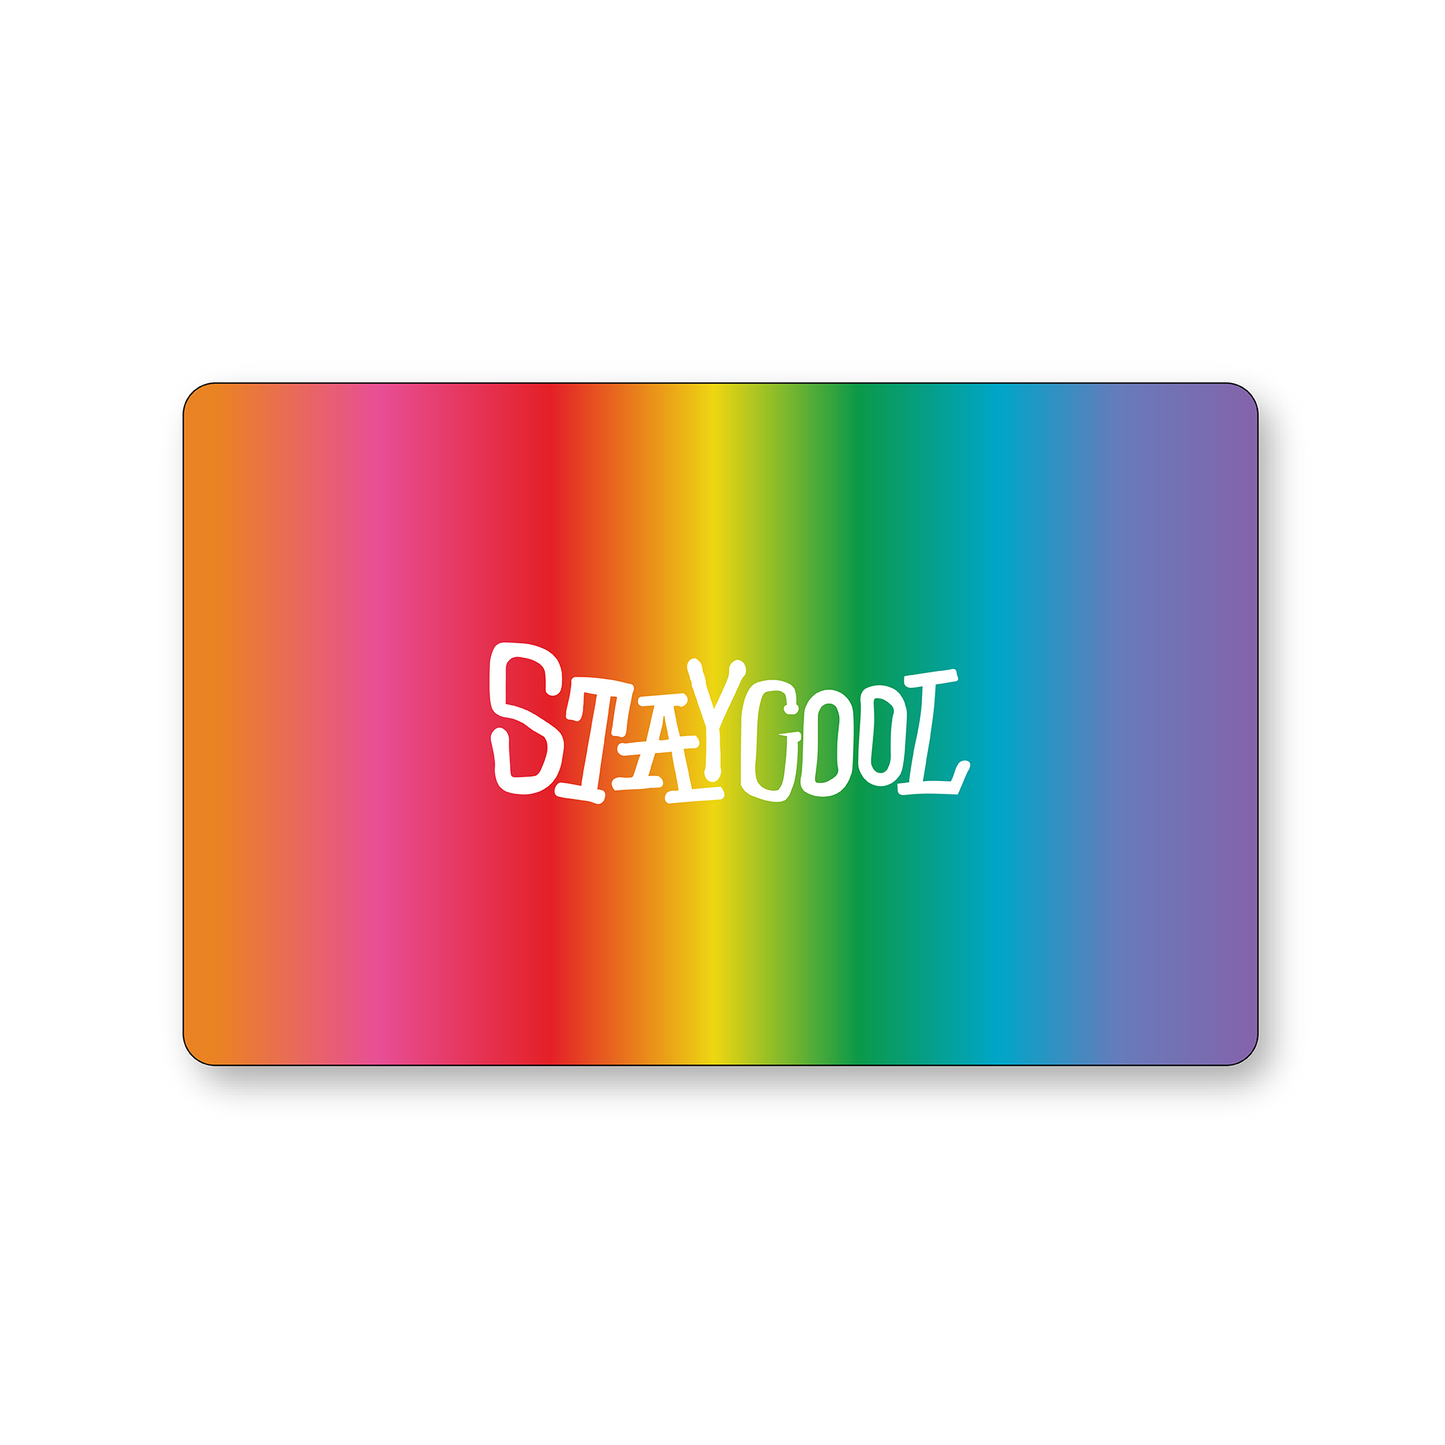 Staycool Digital Gift Card